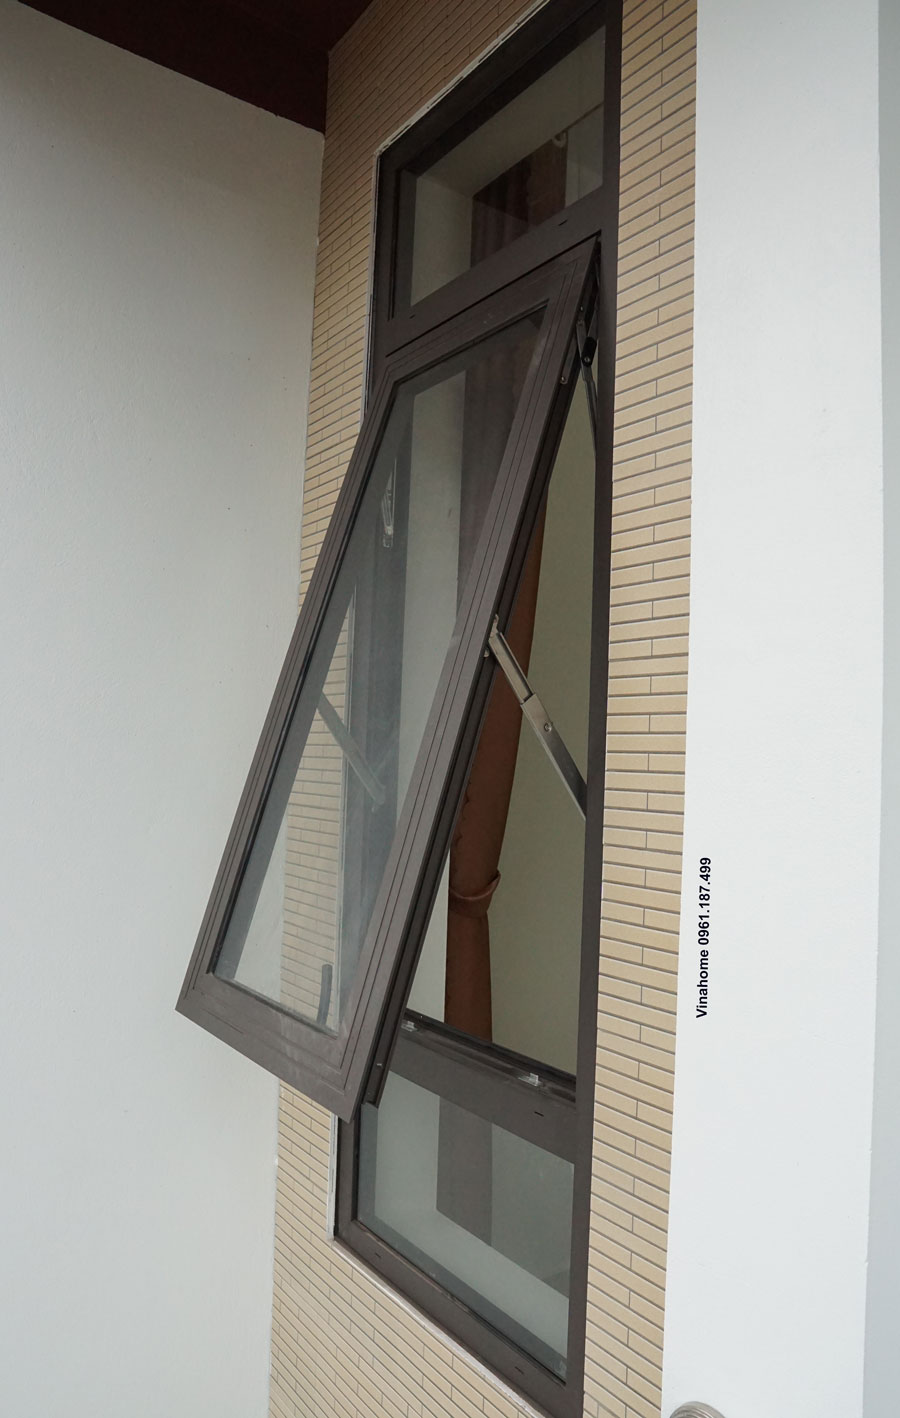 Cửa sổ mở hất 1 cánh: Nếu bạn đang muốn thiết kế một không gian thoáng mát và đầy ánh sáng, mẫu cửa sổ mở hất 1 cánh sẽ là lựa chọn tuyệt vời. Chúng tôi cung cấp nhiều loại cửa sổ để đáp ứng nhu cầu và sở thích của khách hàng.